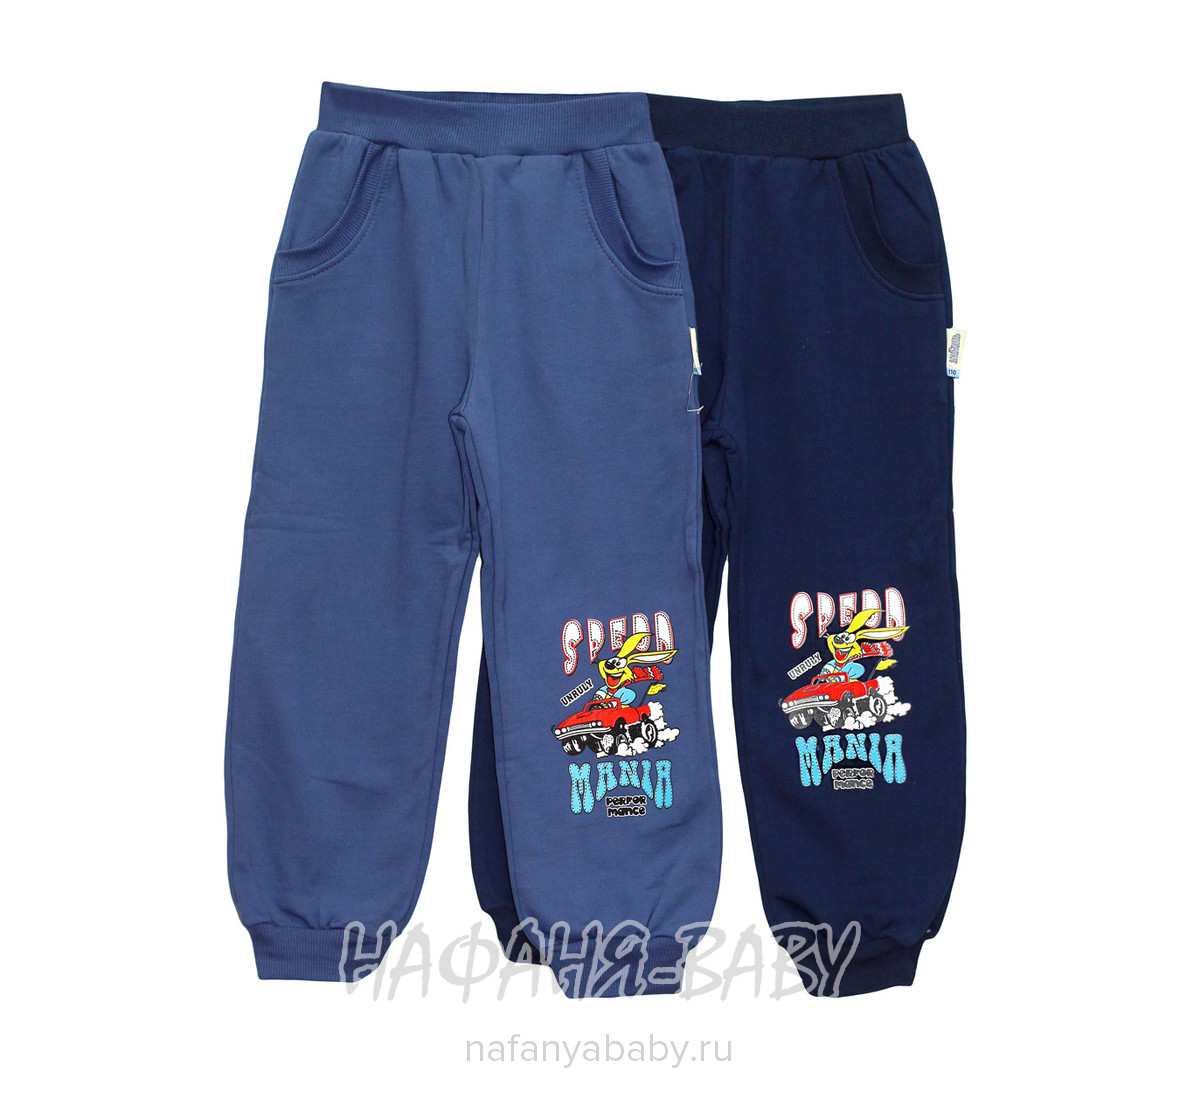 Детские брюки UNRULY арт: 6504, 1-4 года, 5-9 лет, цвет сине-серый, оптом Турция